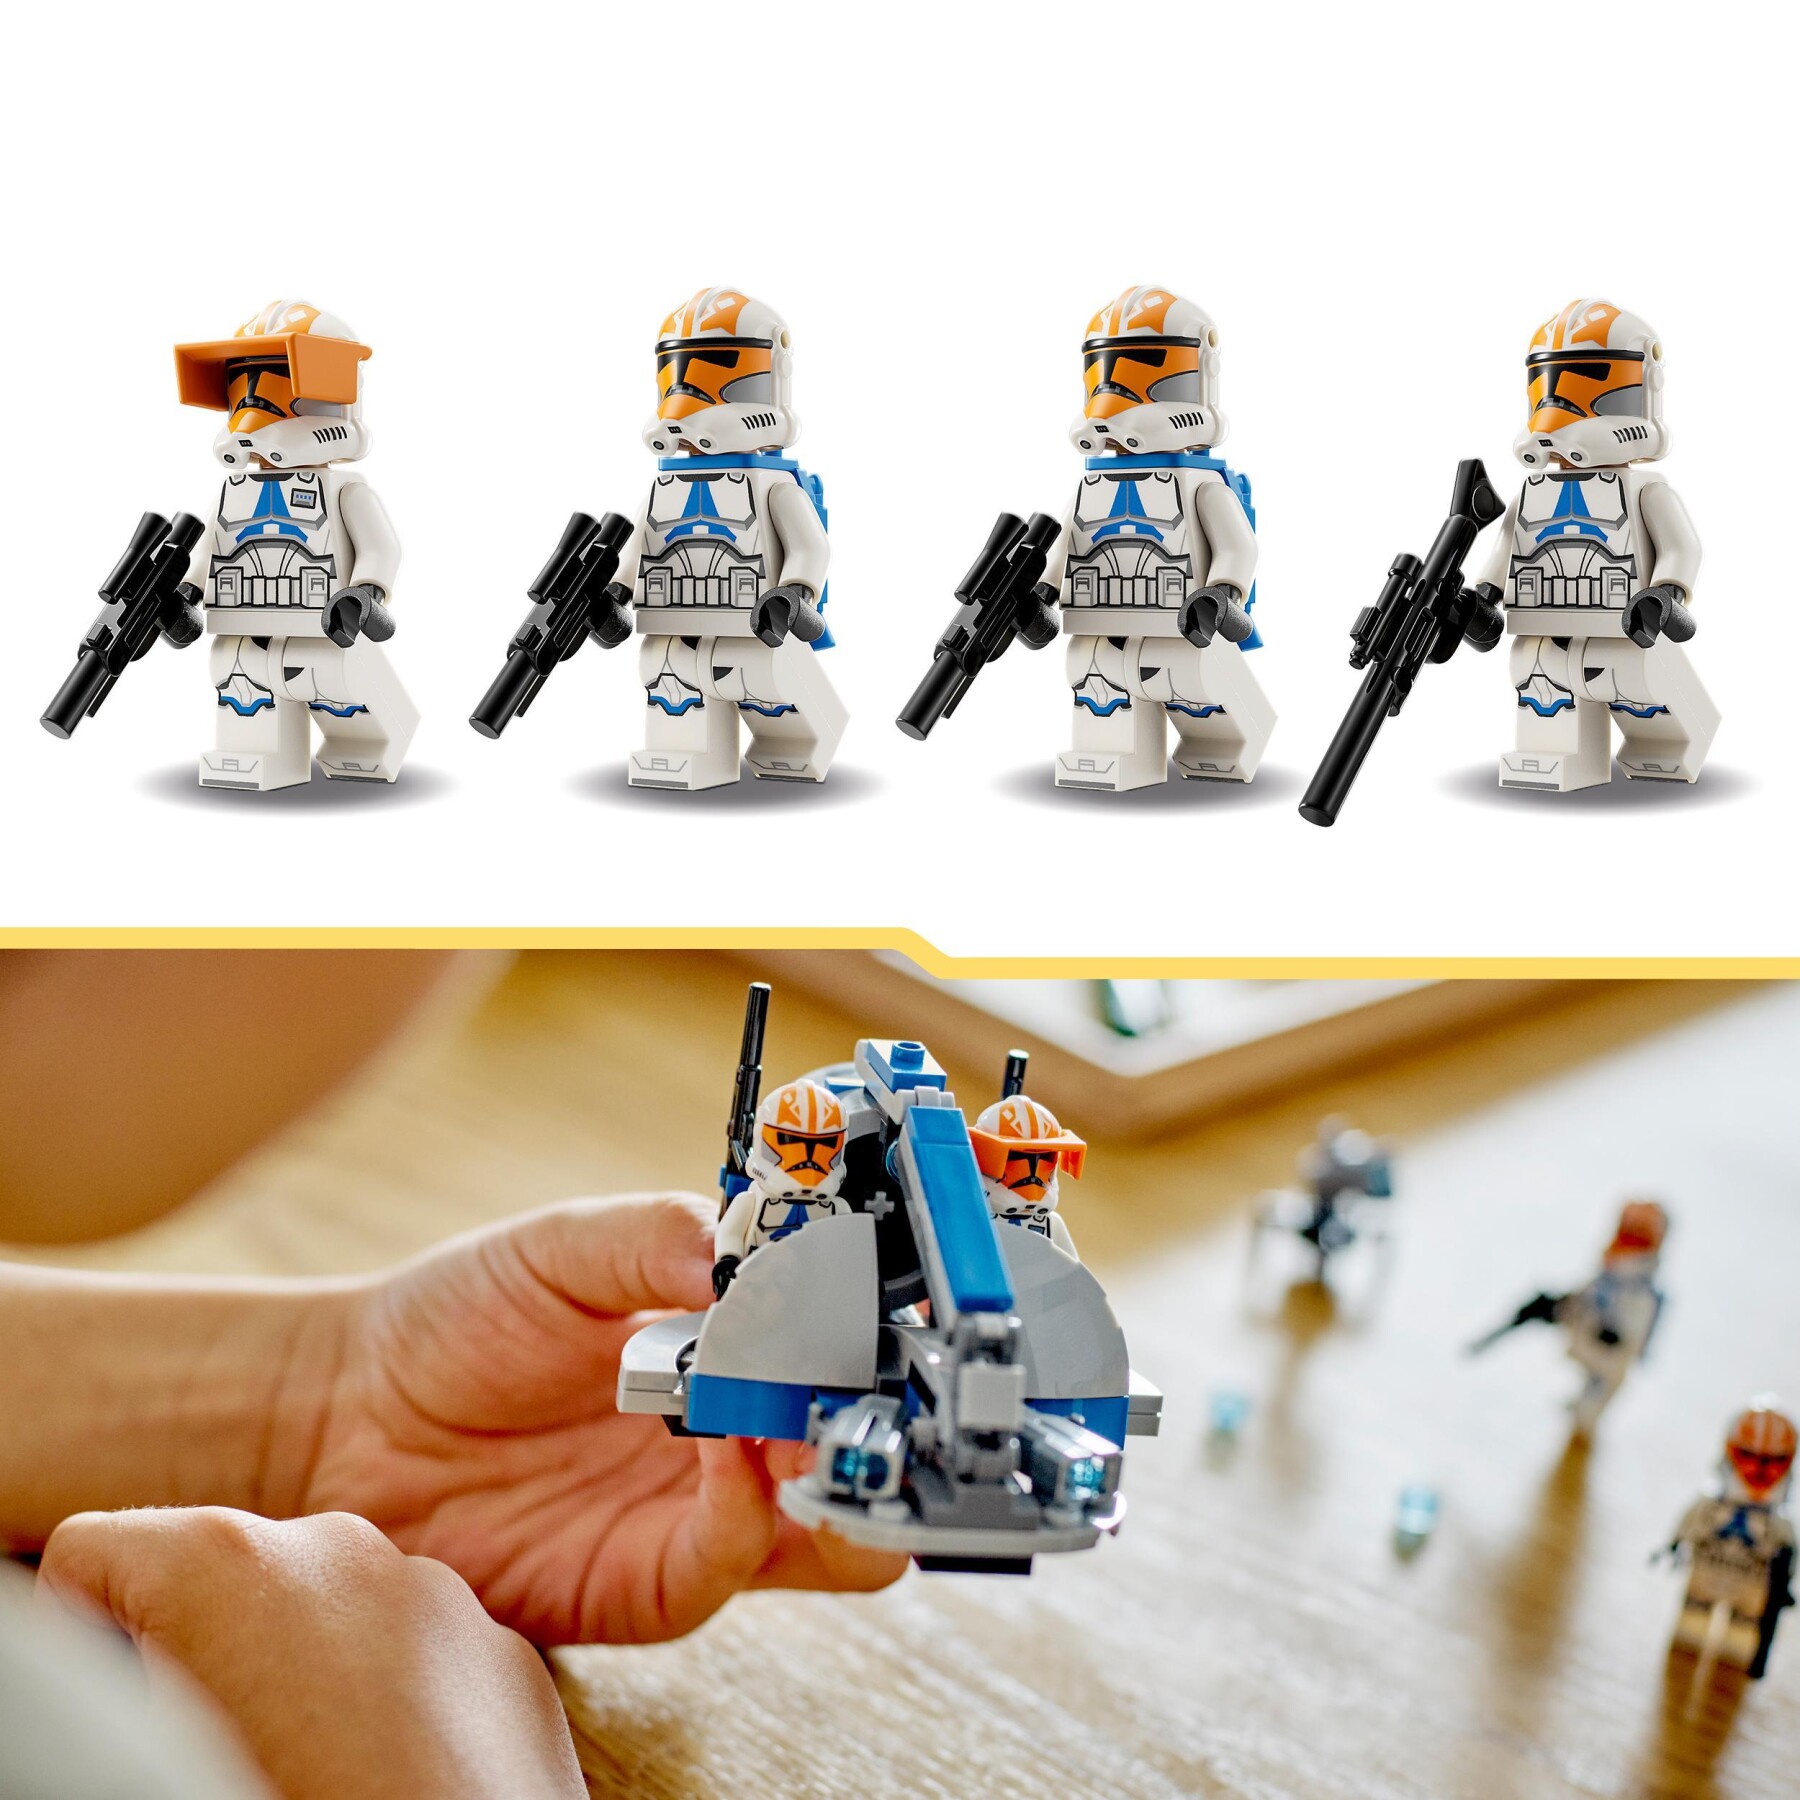 Lego star wars 75359 battle pack clone trooper della 332a compagnia di ahsoka, giochi da costruire con veicolo e minifigure - LEGO® Star Wars™, Star Wars